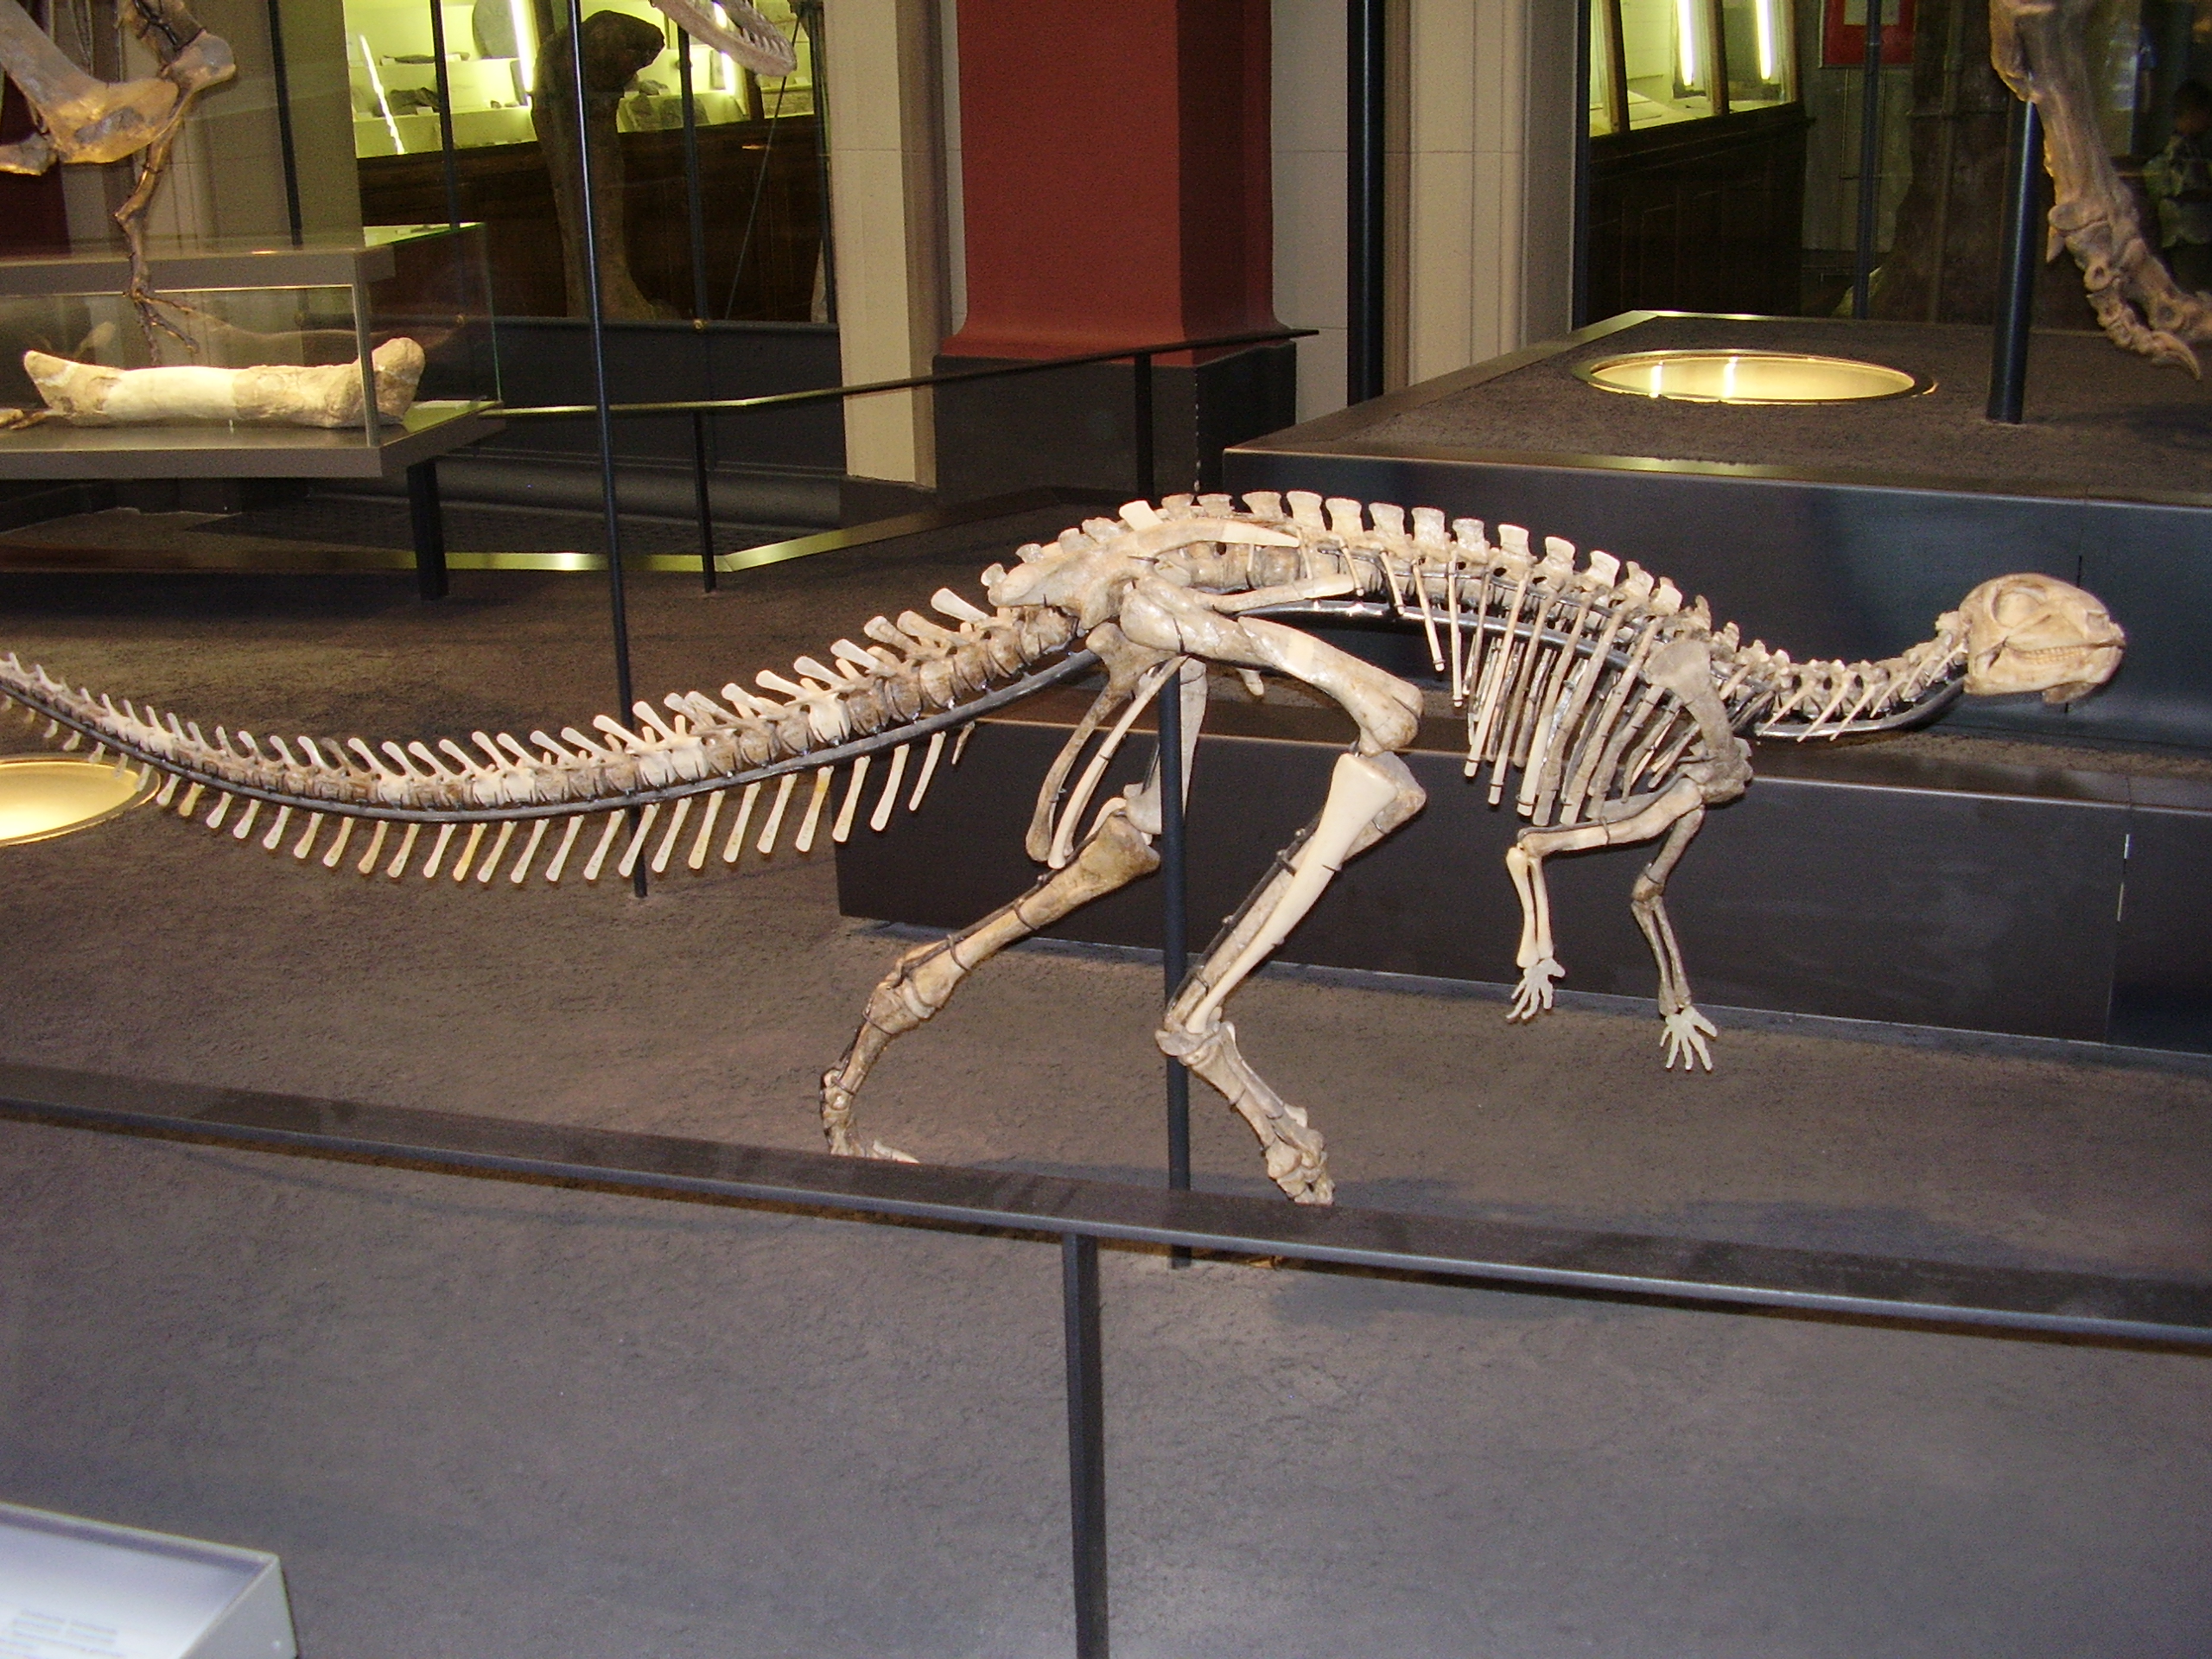 Kostra malého ornitopoda druhu Dysalotosaurus lettowvorbecki v Přírodovědném muzeu v Berlíně. Tento býložravec o velikosti dospělého člověka byl formálně popsán právě před sto lety. Kredit: Vlastní snímek; Wikipedie (CC BY-SA 4.0)